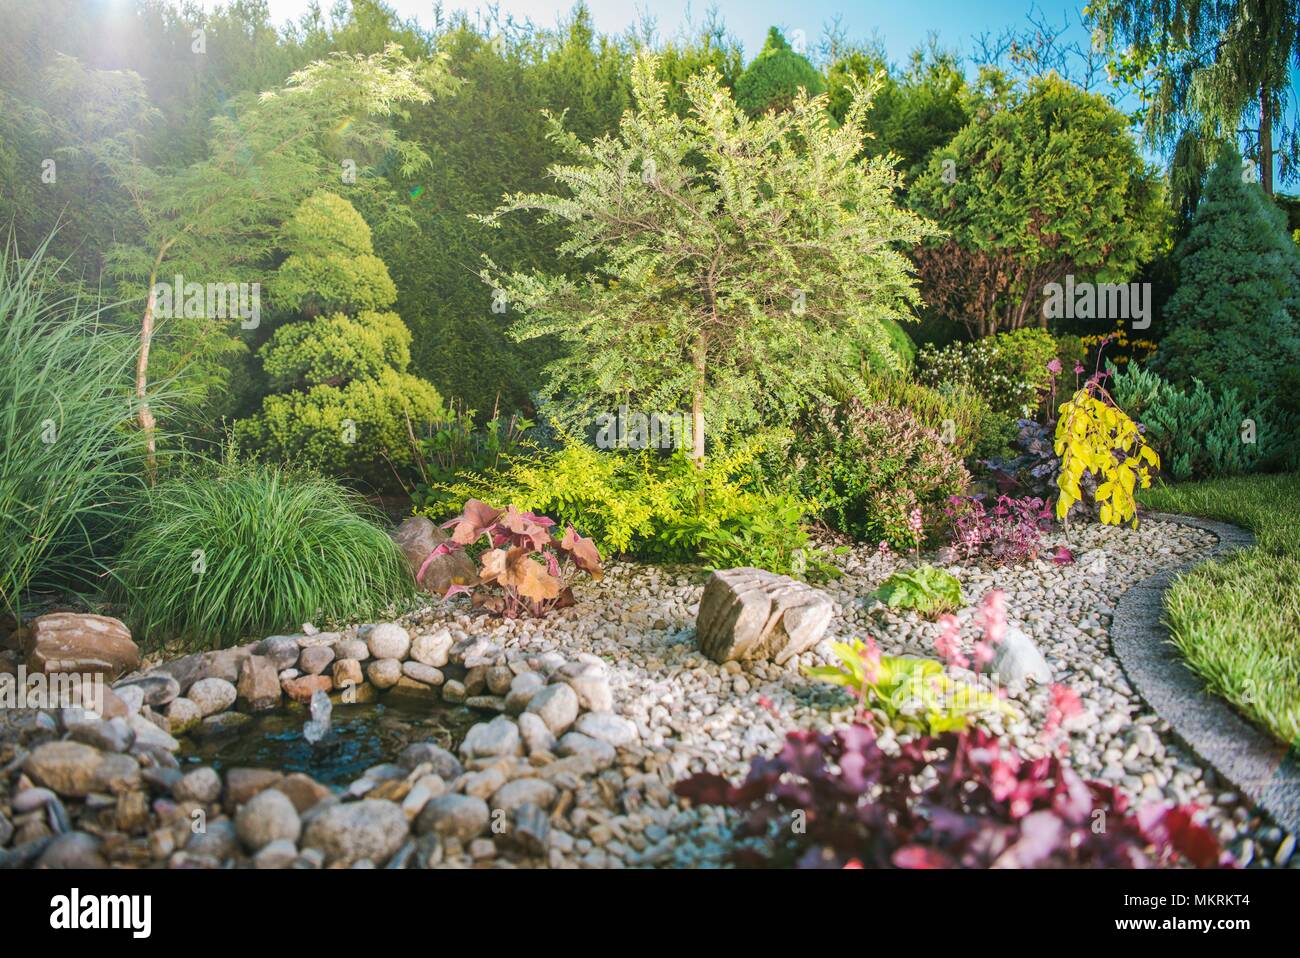 Jardin créatif plein de plantes colorées. Thème jardinage. Banque D'Images